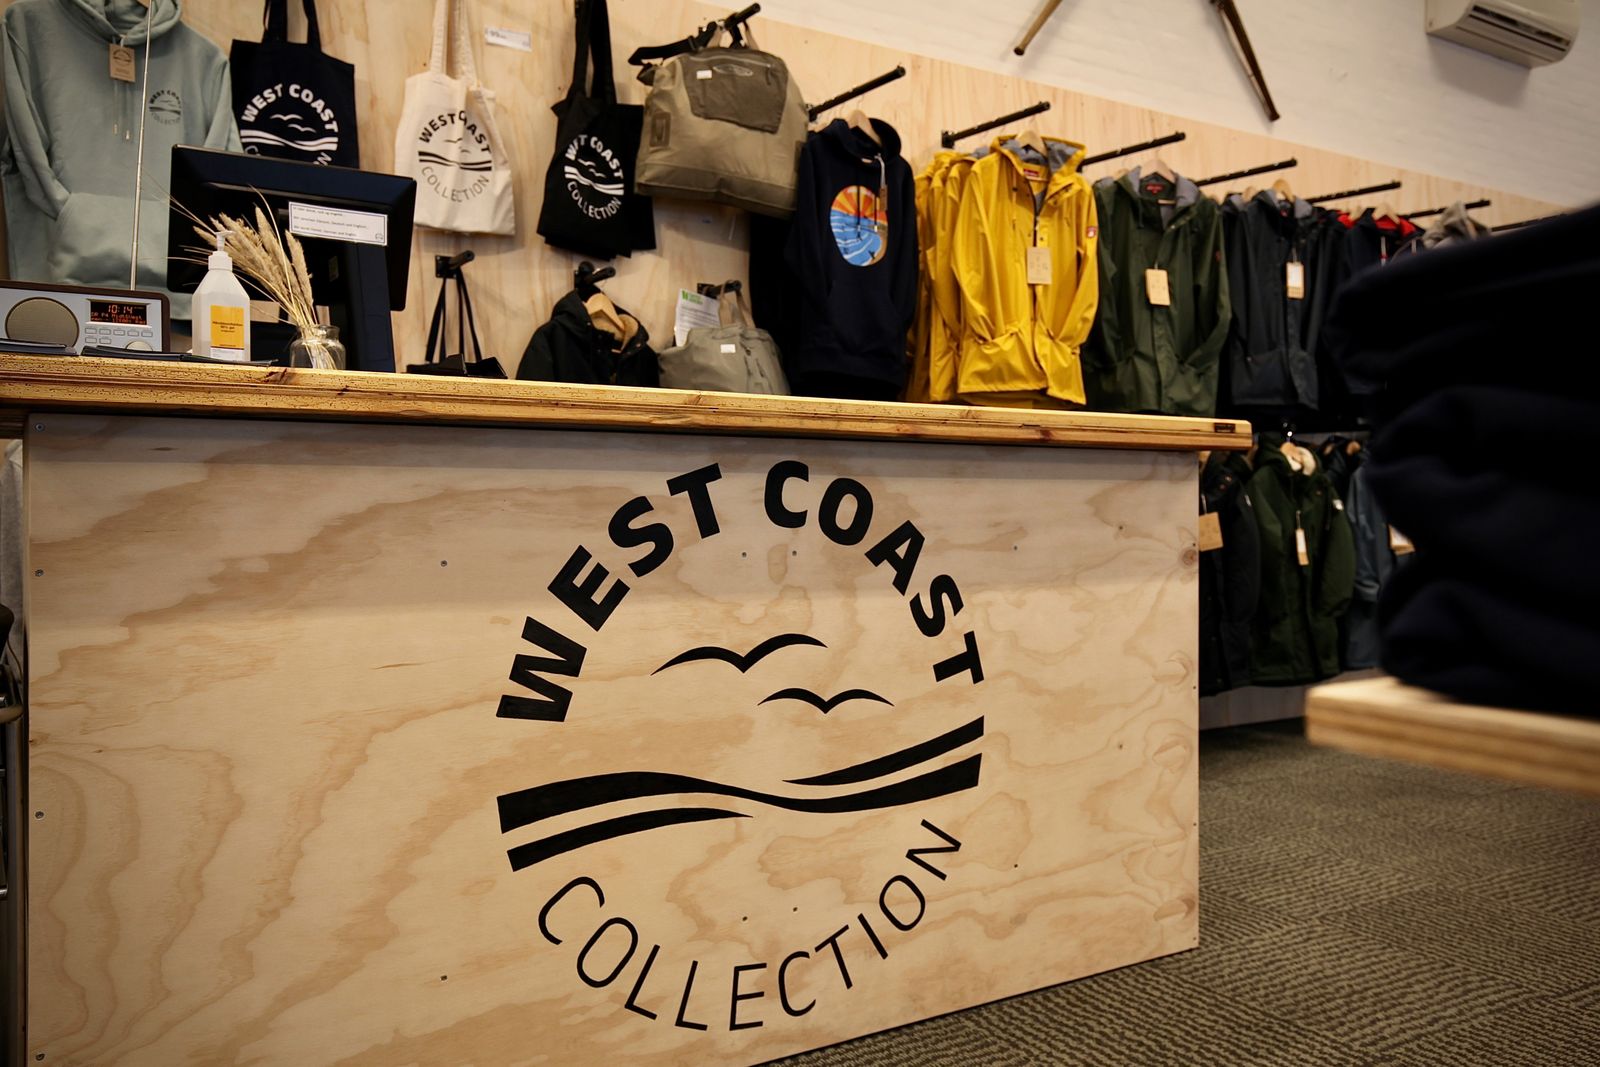 Håndmalet skiltning for West Coast Collection